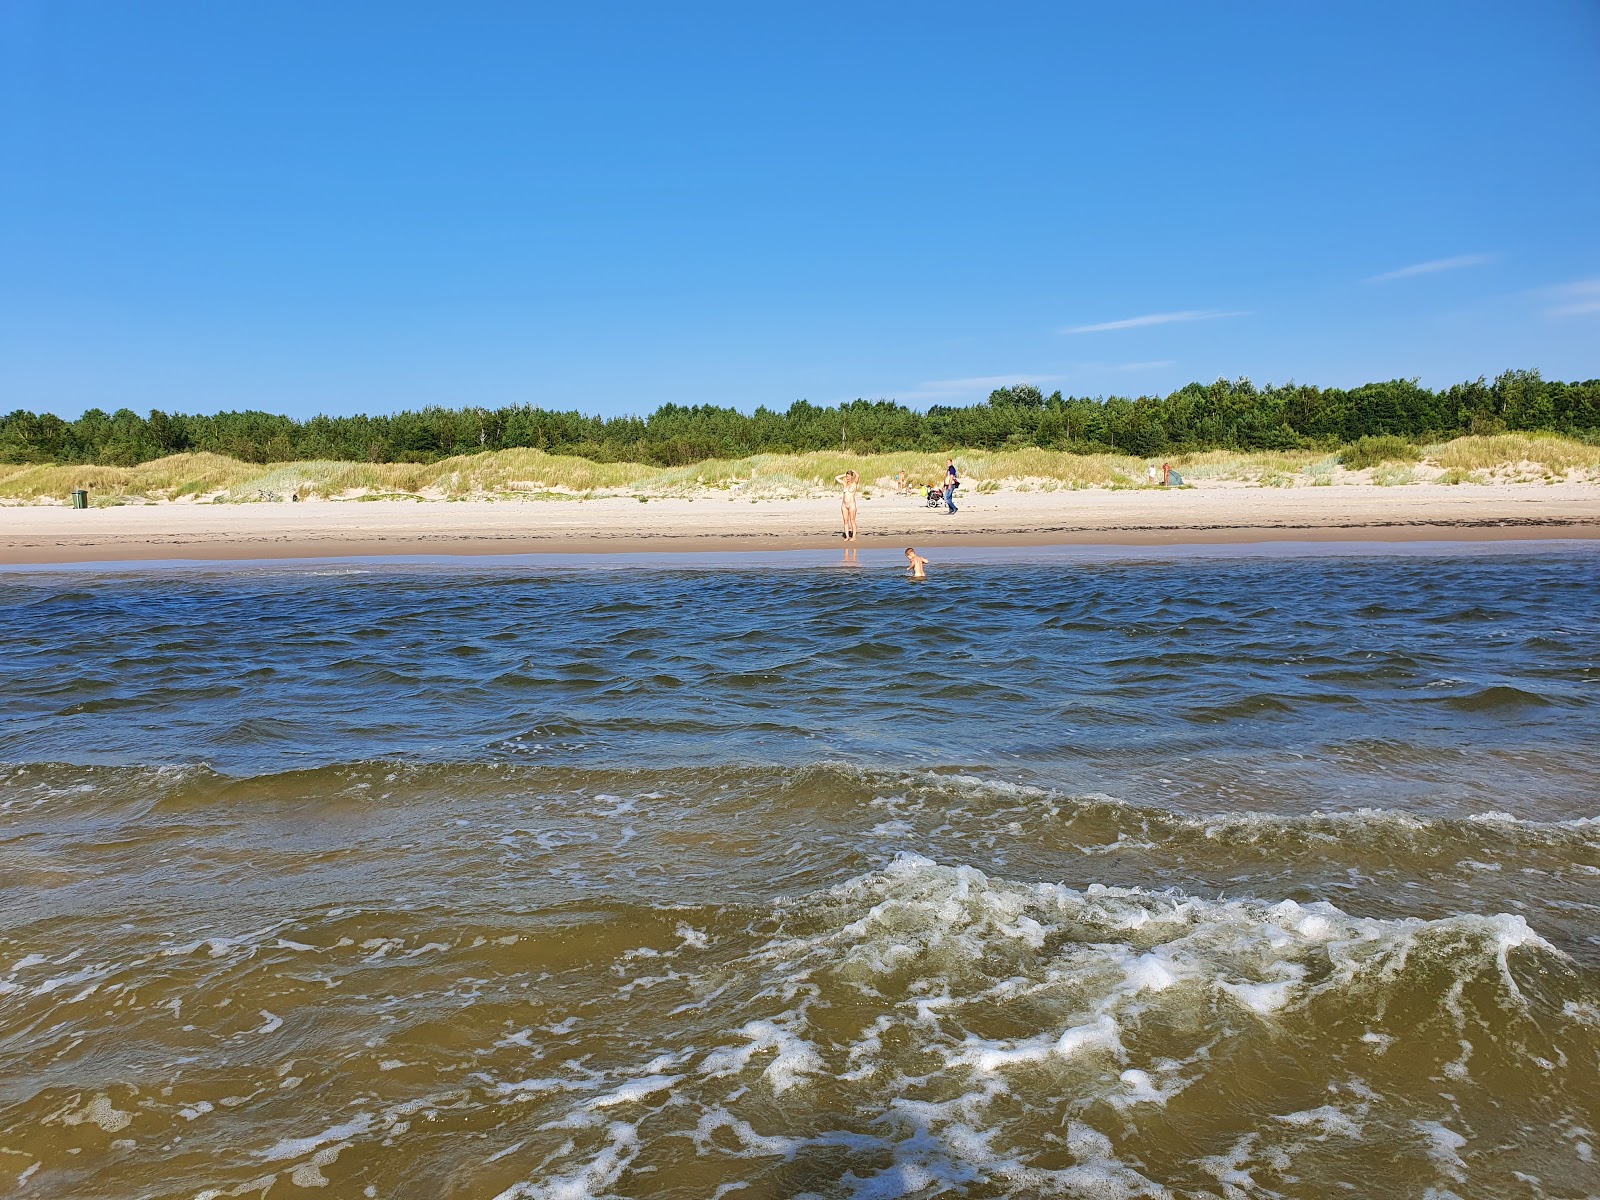 Photo of Liepajas nudistu pludmale with long straight shore